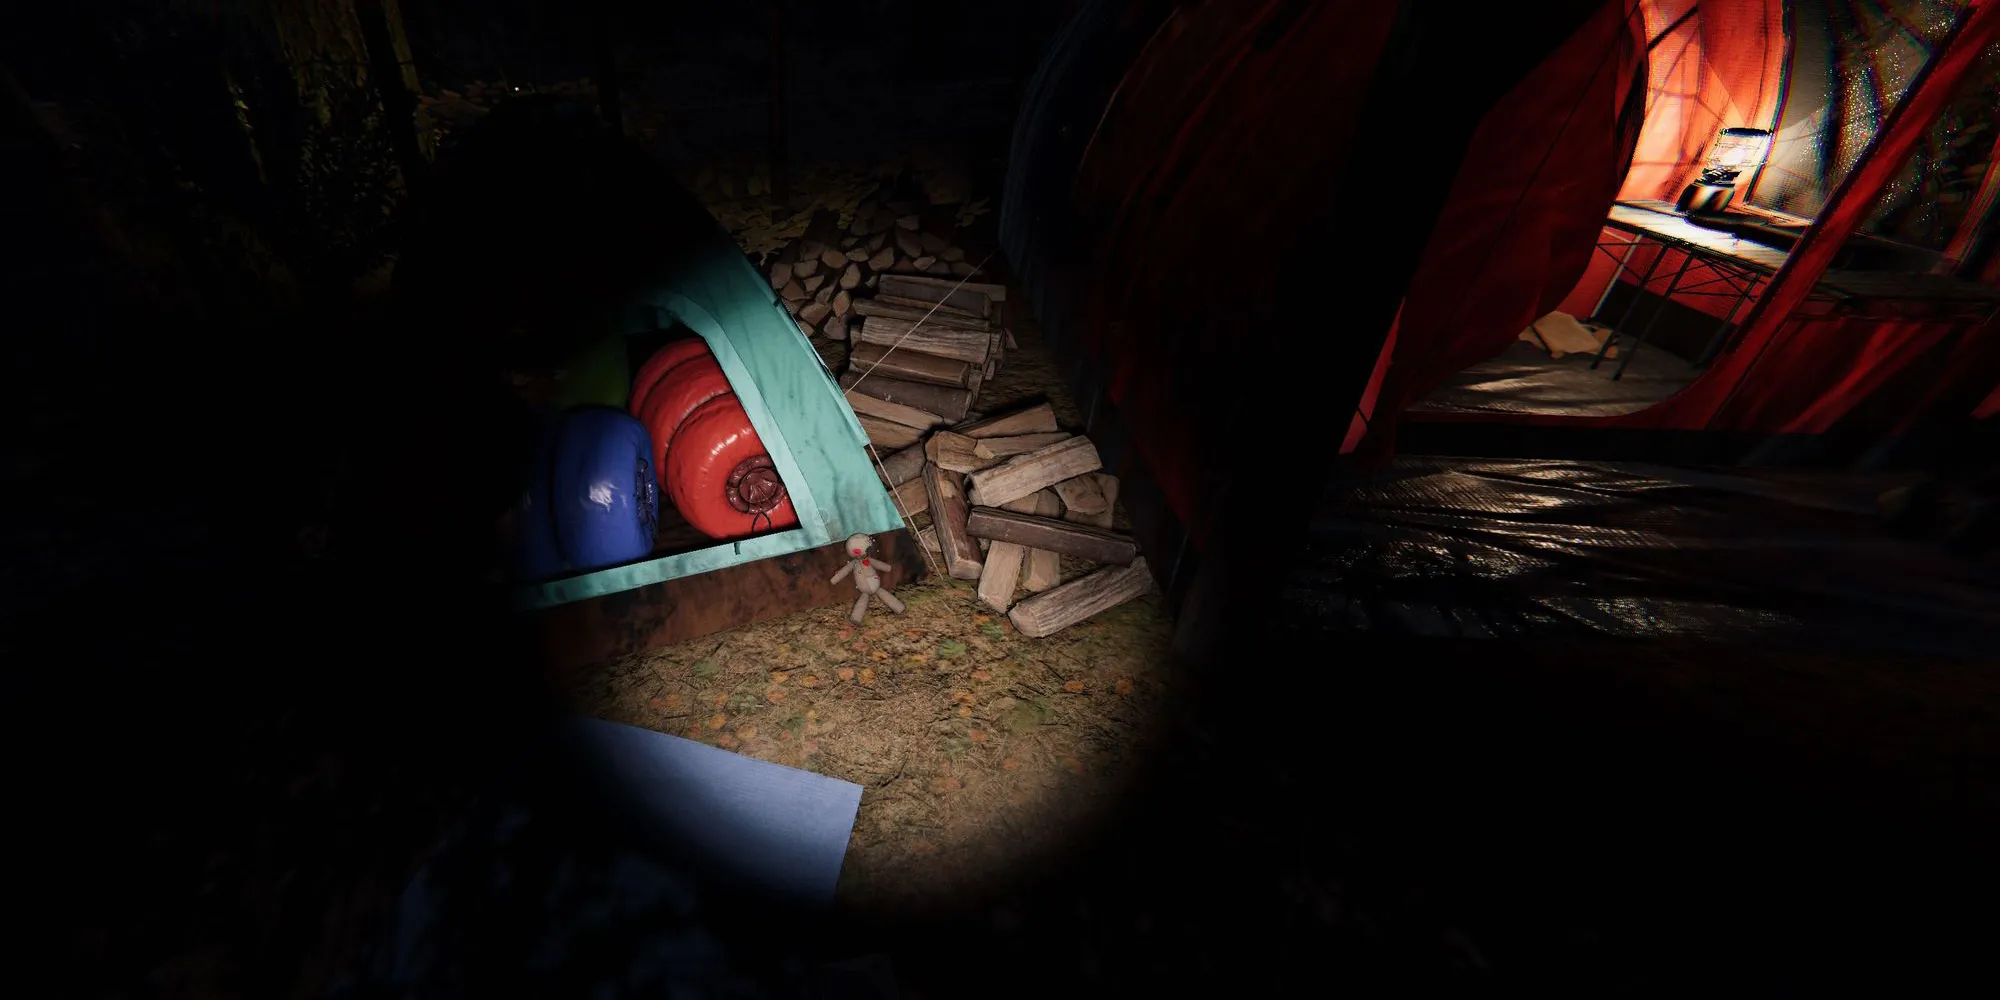 画面显示了风木露营地中一只小巫毒娃娃，旁边是一座蓝色帐篷，背后是一个红色帐篷。